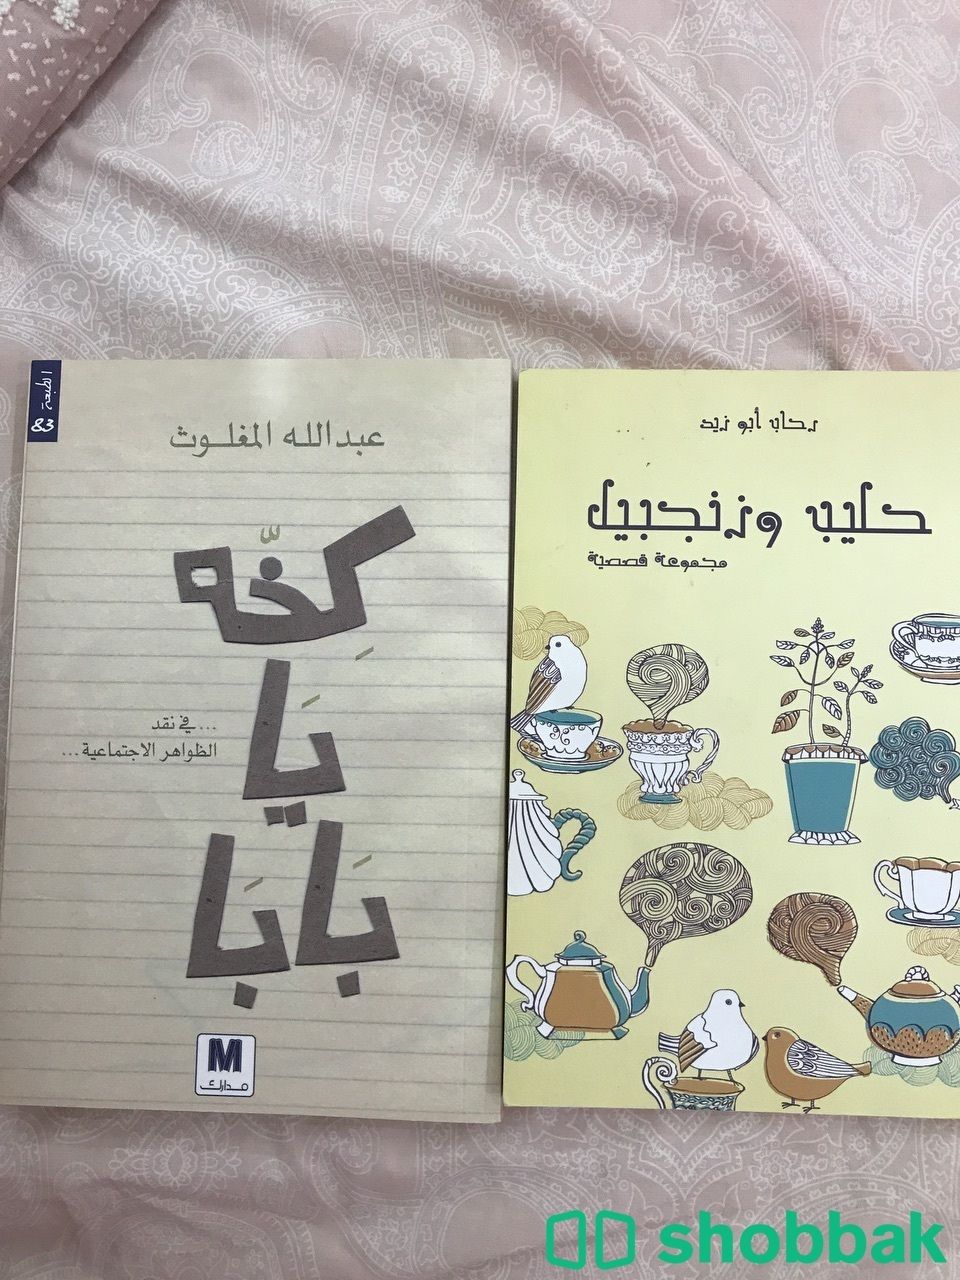 كتاب كخة يا بابا وكتاب حليب وزنجبيل  Shobbak Saudi Arabia